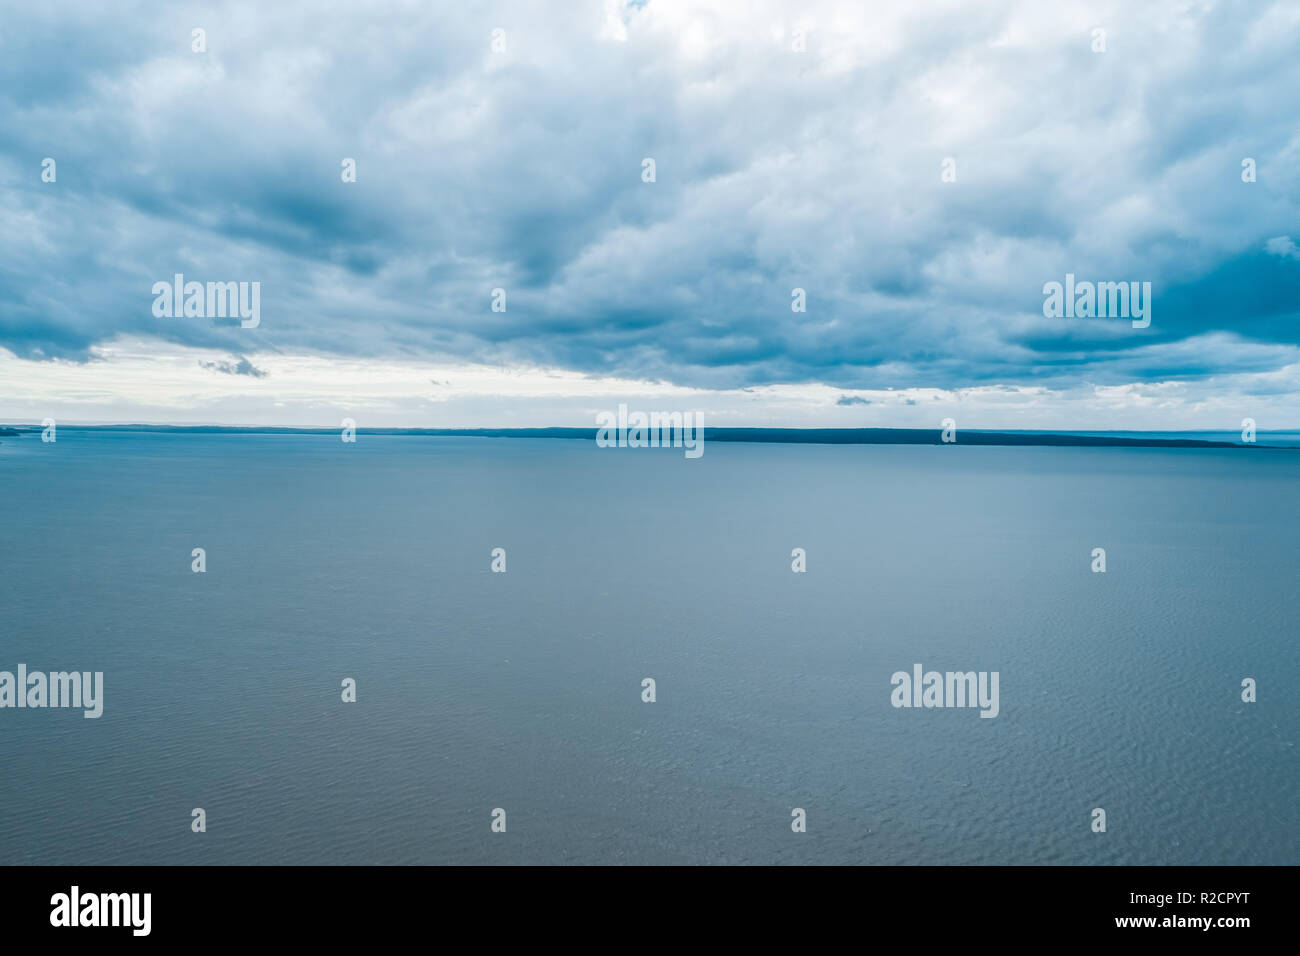 Antenne Seascape - Regen Wolken über ruhigem Wasser und kleinen Flecken Land am Horizont - Ruhige bedeckt Szene Stockfoto